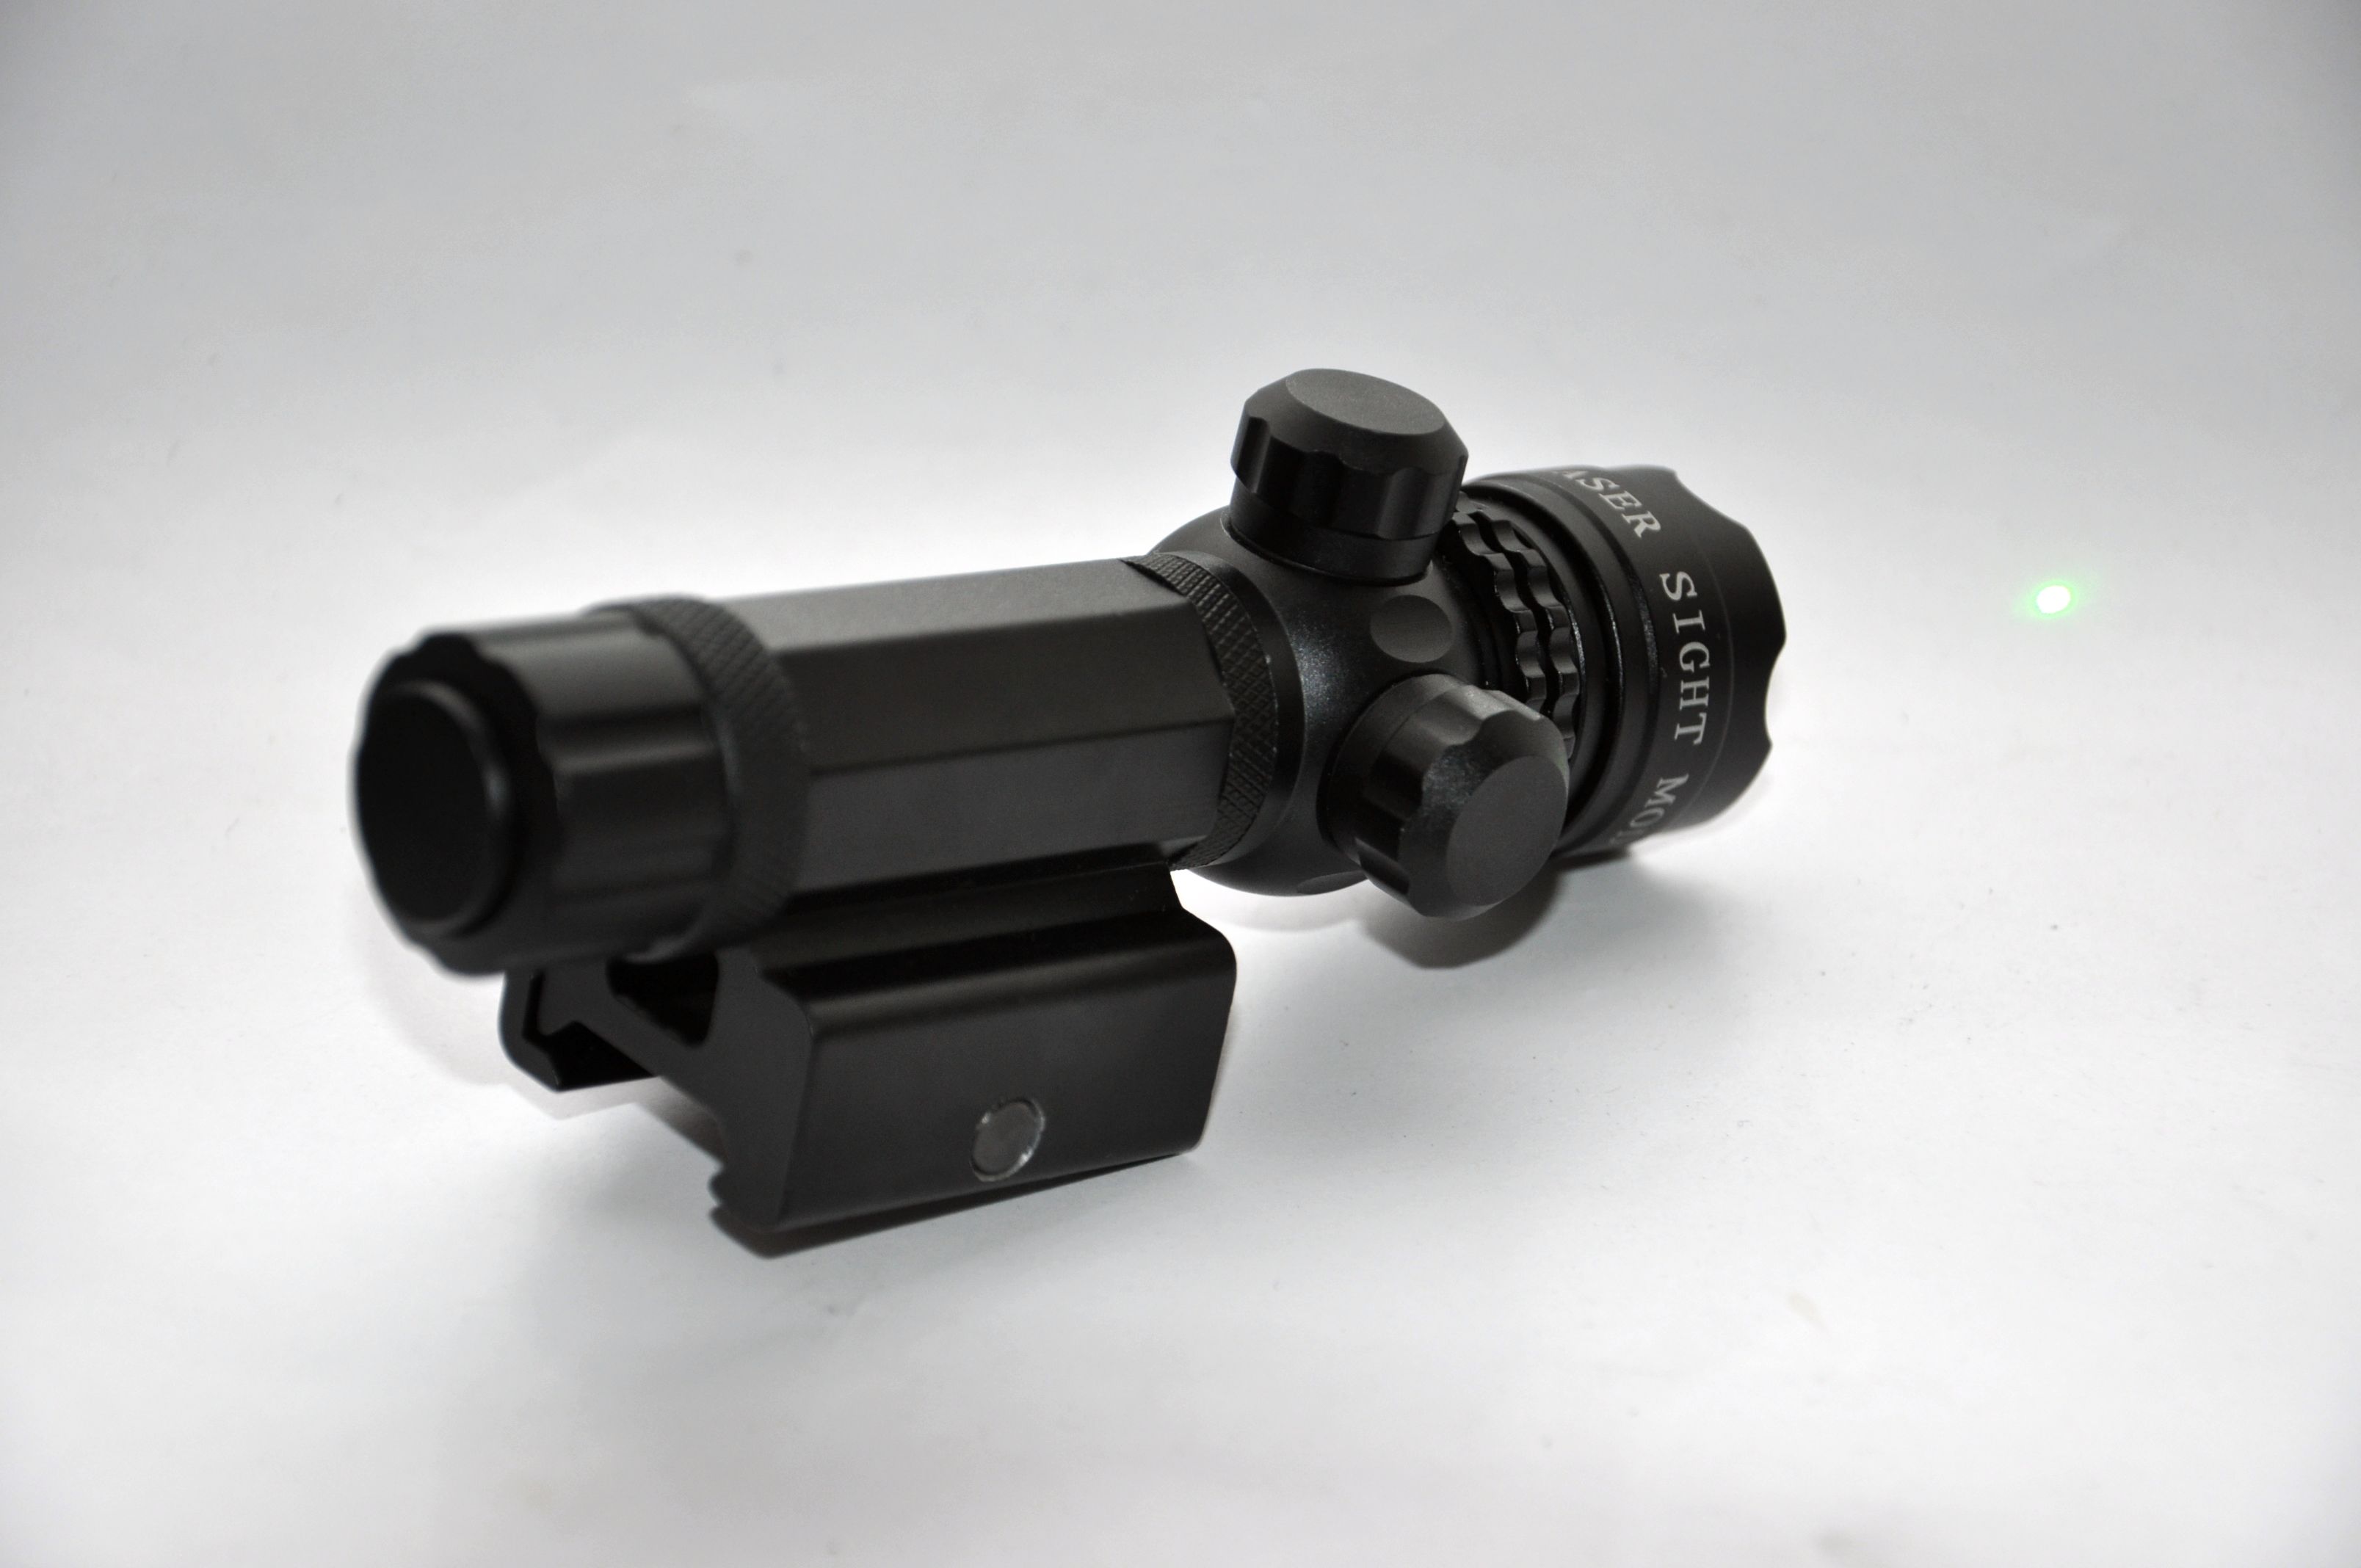 LT-913 Tactical laser sight